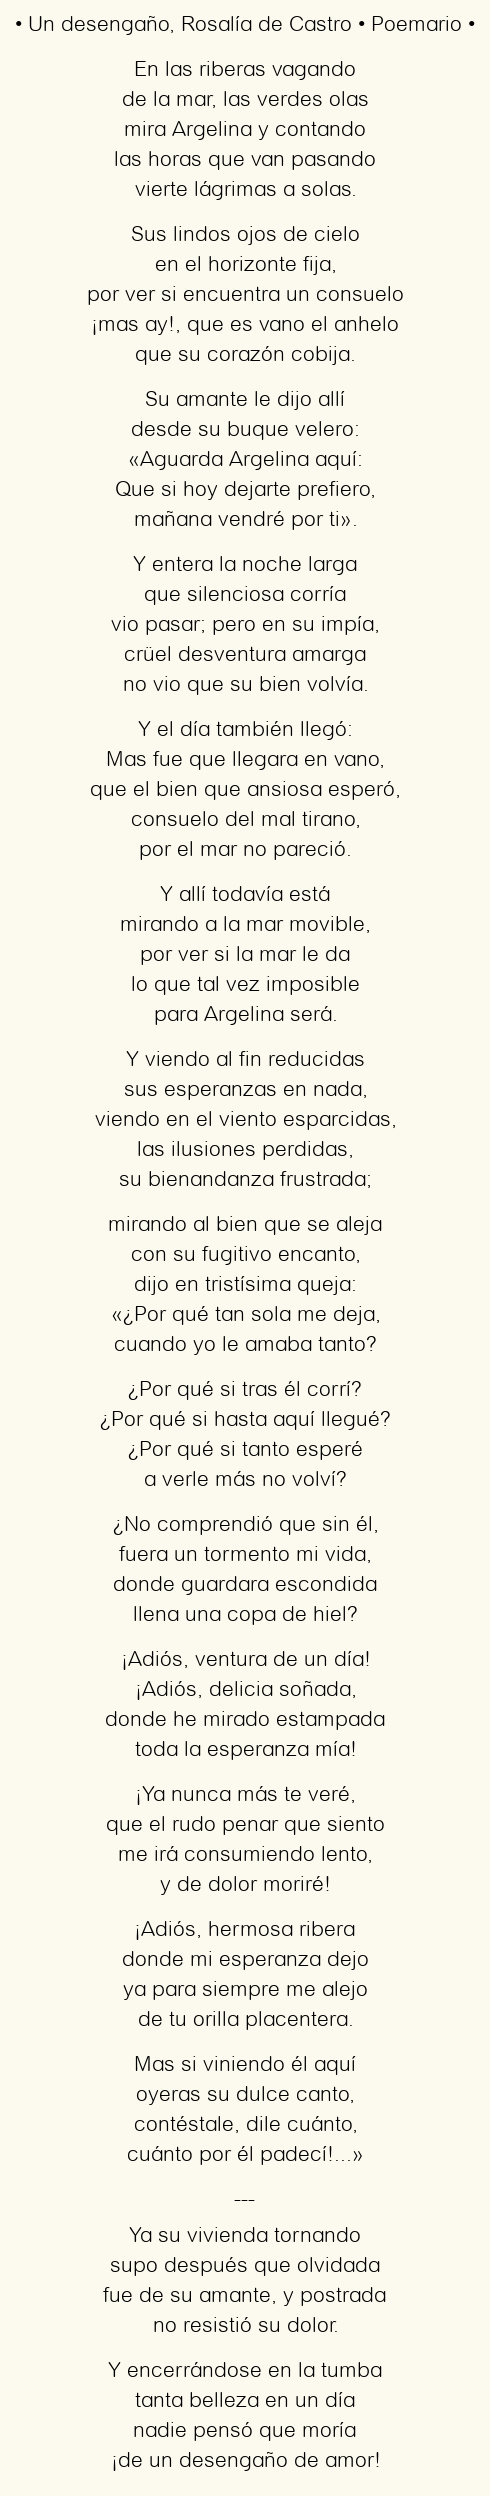 Imagen con el poema Un desengaño, por Rosalía de Castro